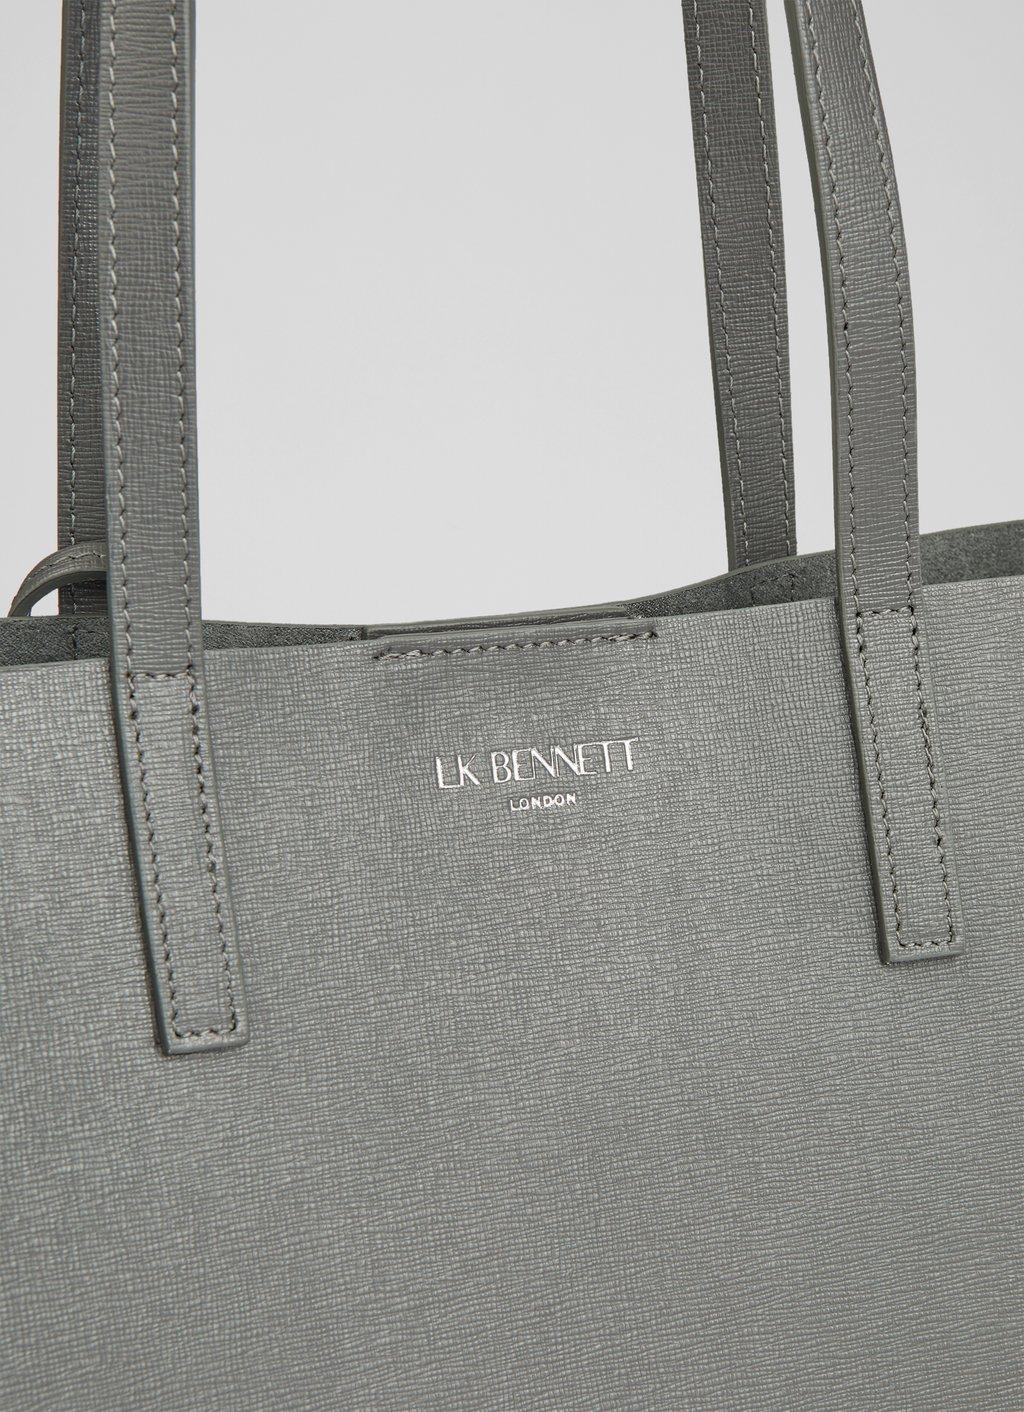 Calvin Klein Saffiano Leather Small Tote Bag in Black